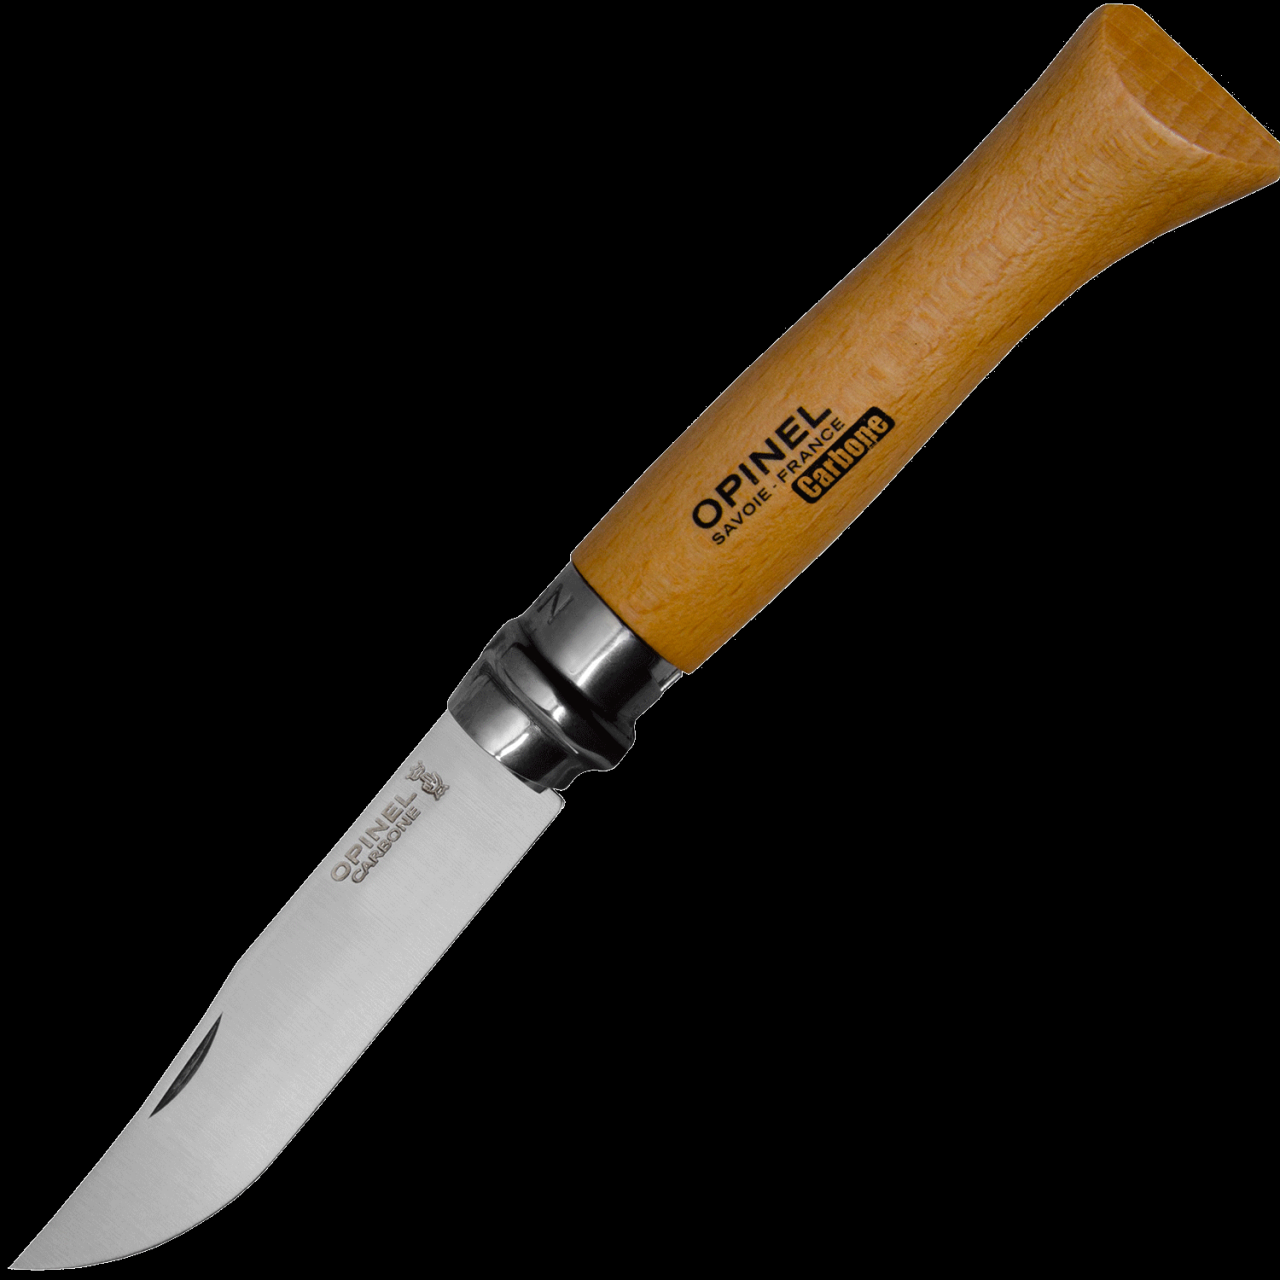 Складной нож Opinel Opinel 10VRN 9 113100 купить в RezatRu с быстрой доставкой